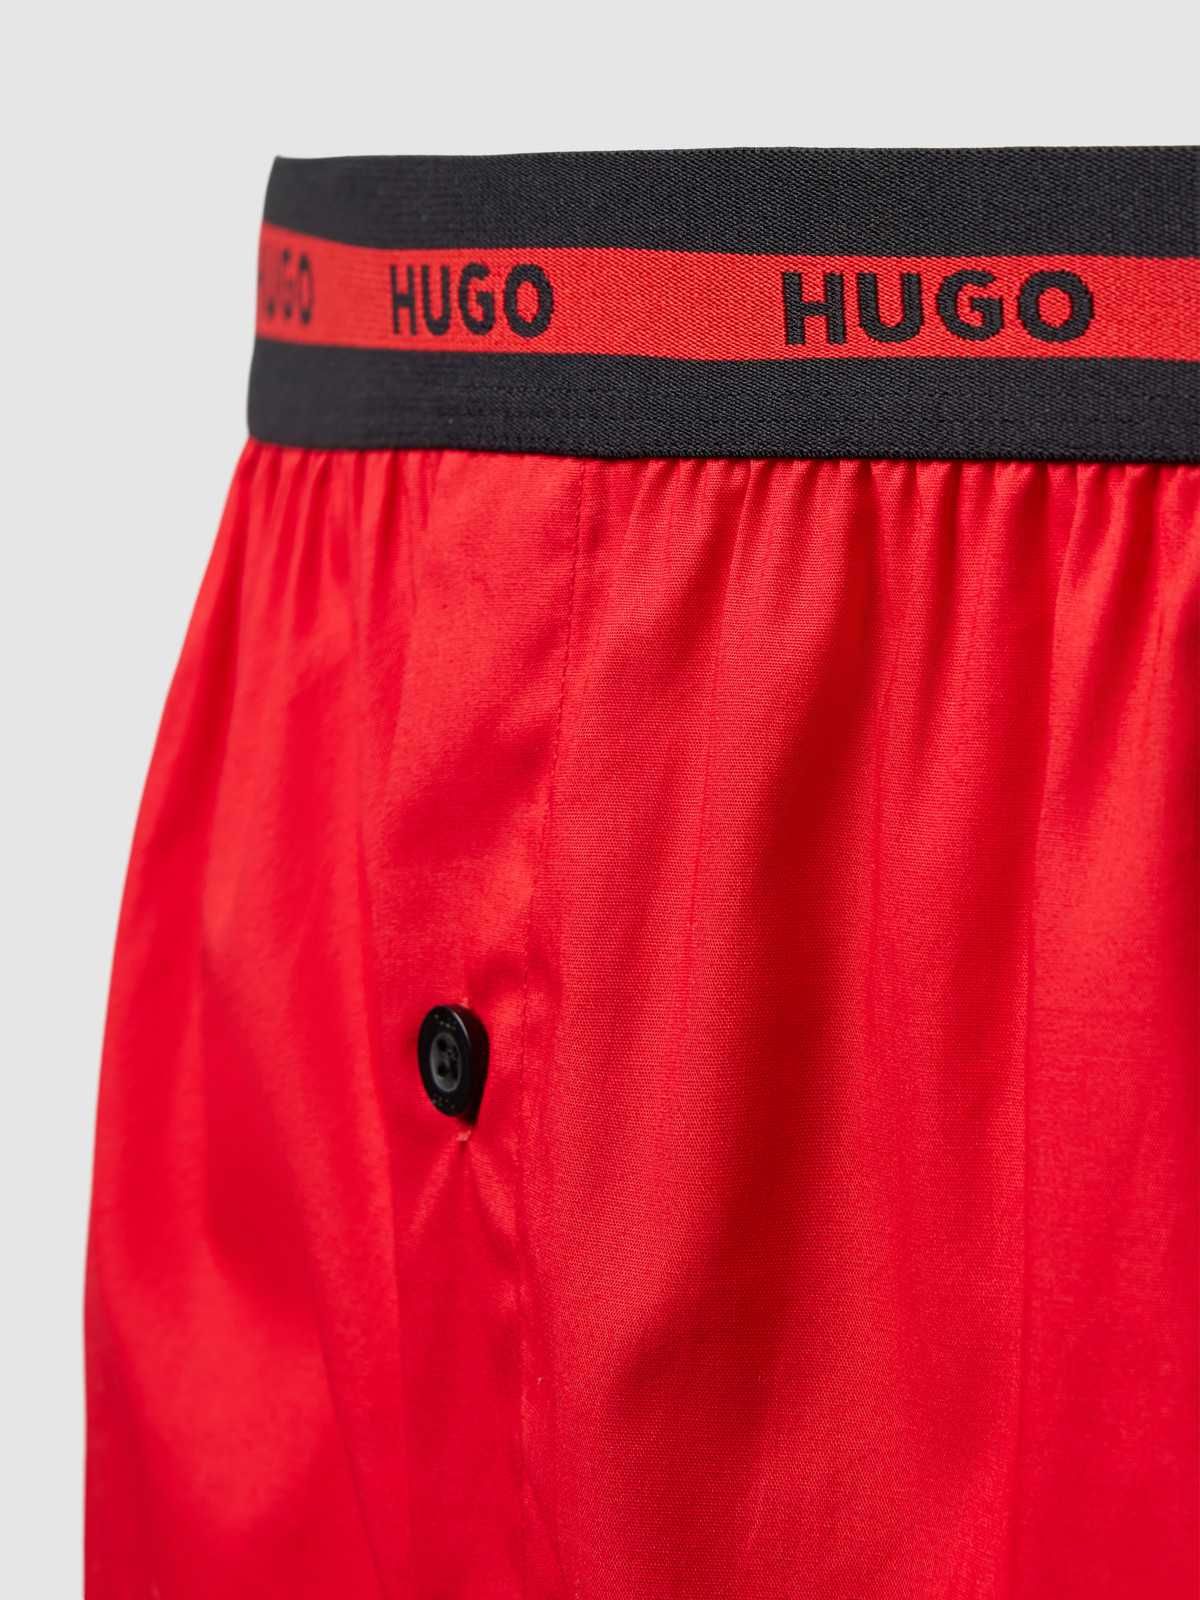 HUGO BOSS оригінальні труси боксери HUGO (набір 2 шт) розмір S